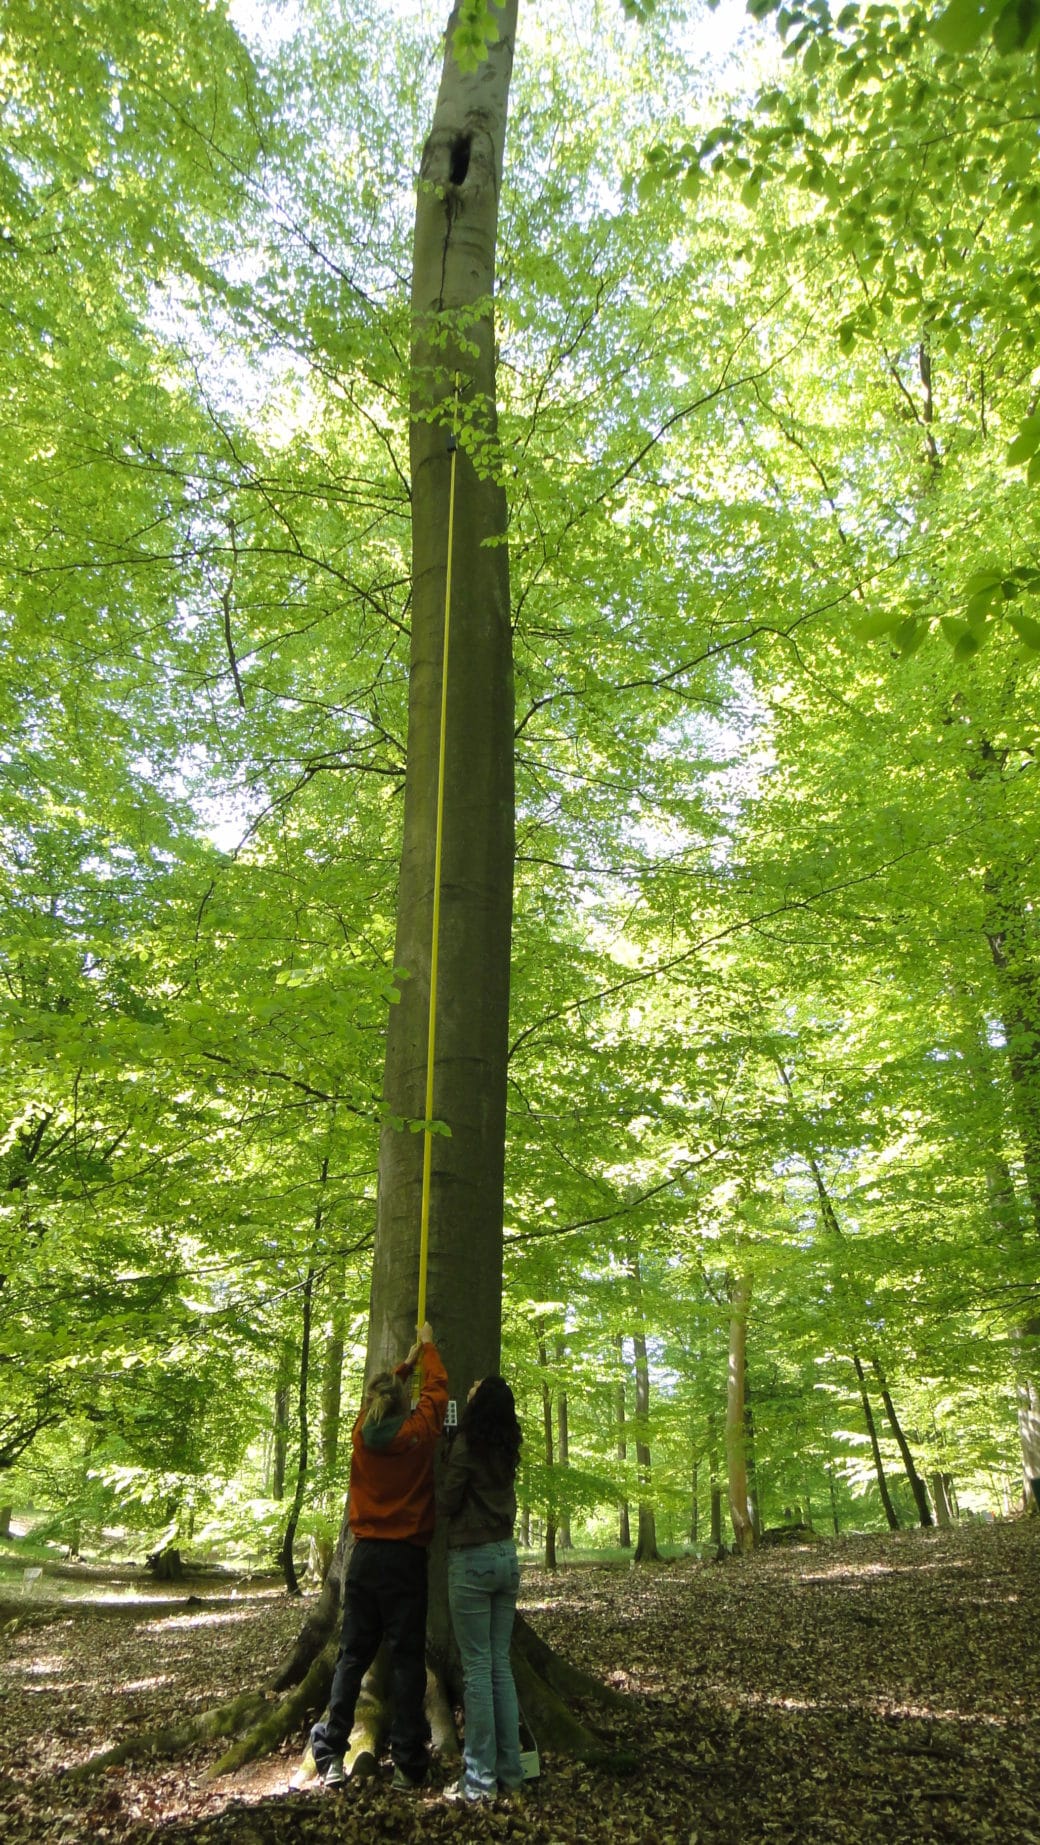 Abbildung: Das Foto zeigt zwei junge Wissenschaftlerinnen, die im Frühling im Wald vor einer Buche stehen. Eine der Frauen hält einen ungefähr 5 bis 6 Meter langen gelben ausfahrbaren Stab nach oben an den Baumstamm. Am Ende des Stabs befindet sich eine Kamera, mit der eine Baumhöhlen-Inspektion zur Kontrolle des Inhalts durchgeführt wird.